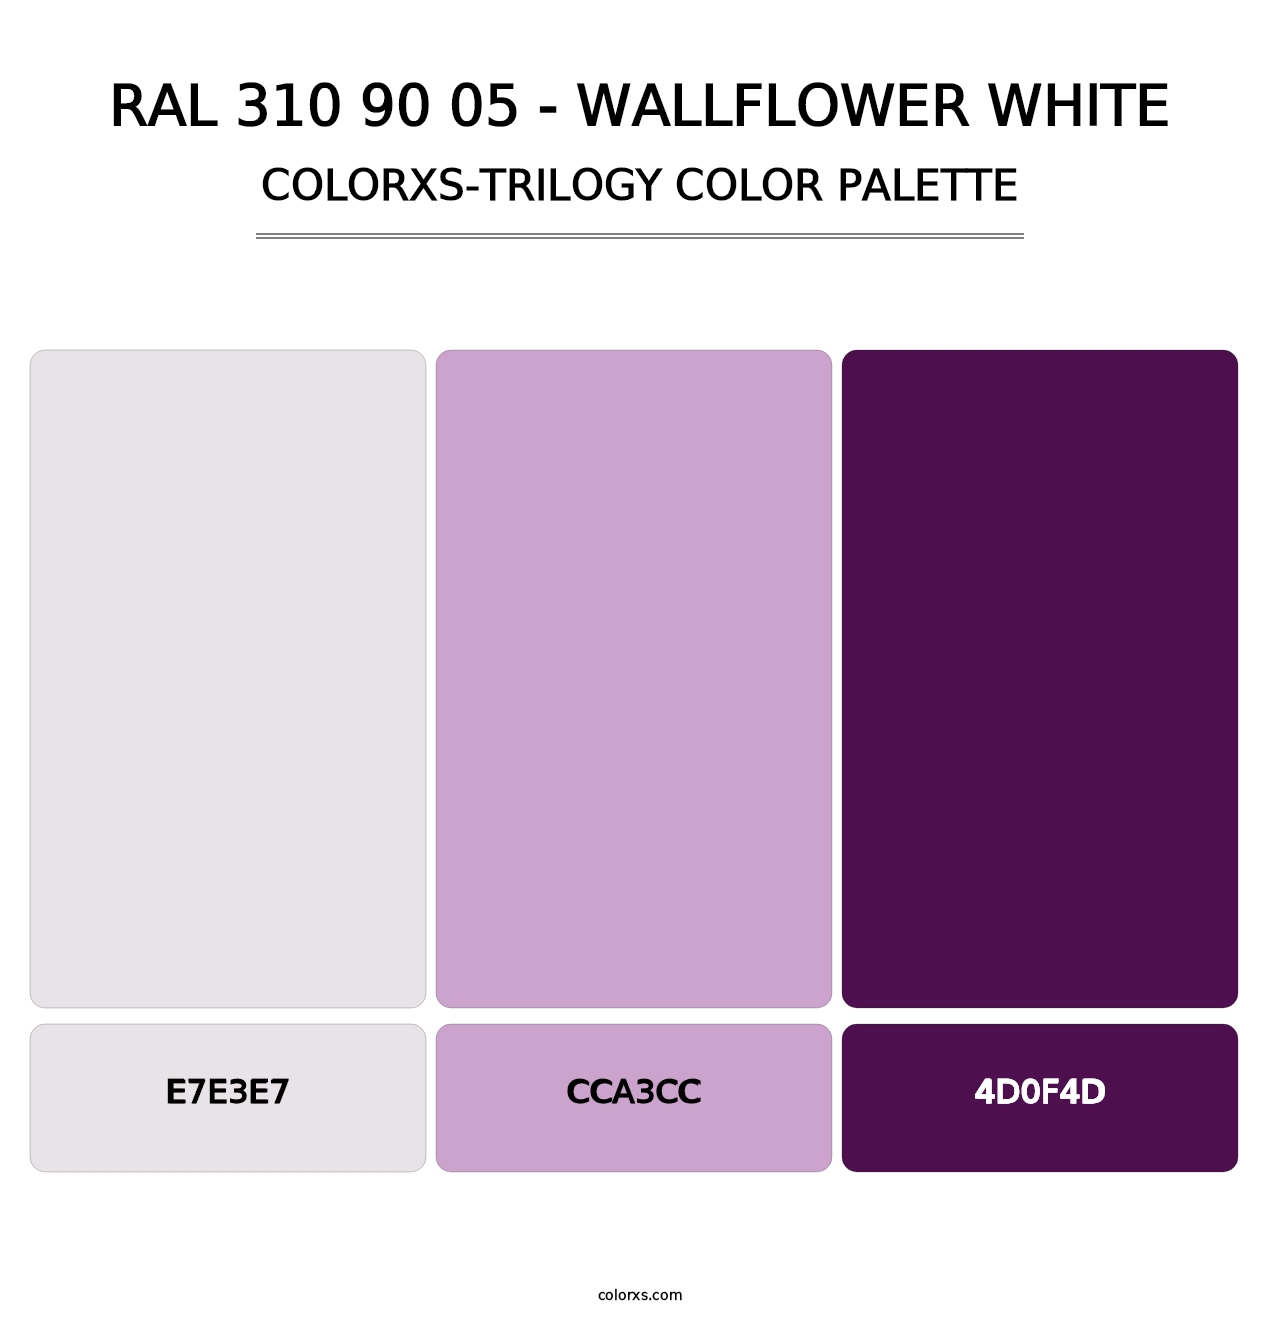 RAL 310 90 05 - Wallflower White - Colorxs Trilogy Palette